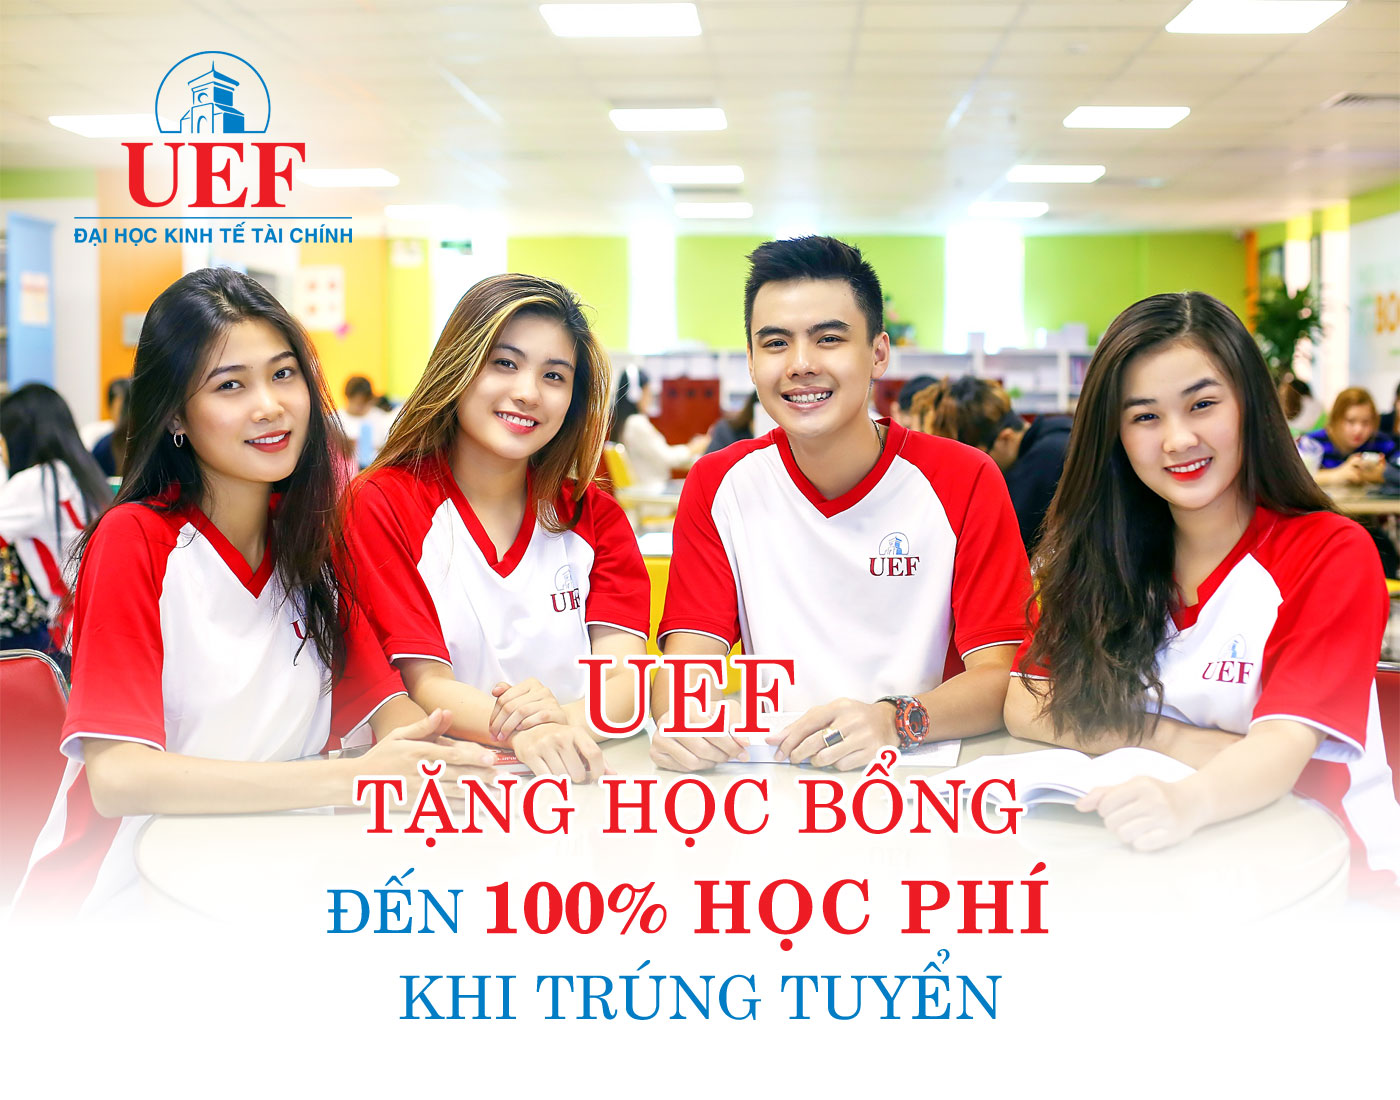 UEF tặng học bổng đến 100% học phí khi trúng tuyển - Cơ Hội Mua Sắm Học tập - Tuổi Trẻ Online